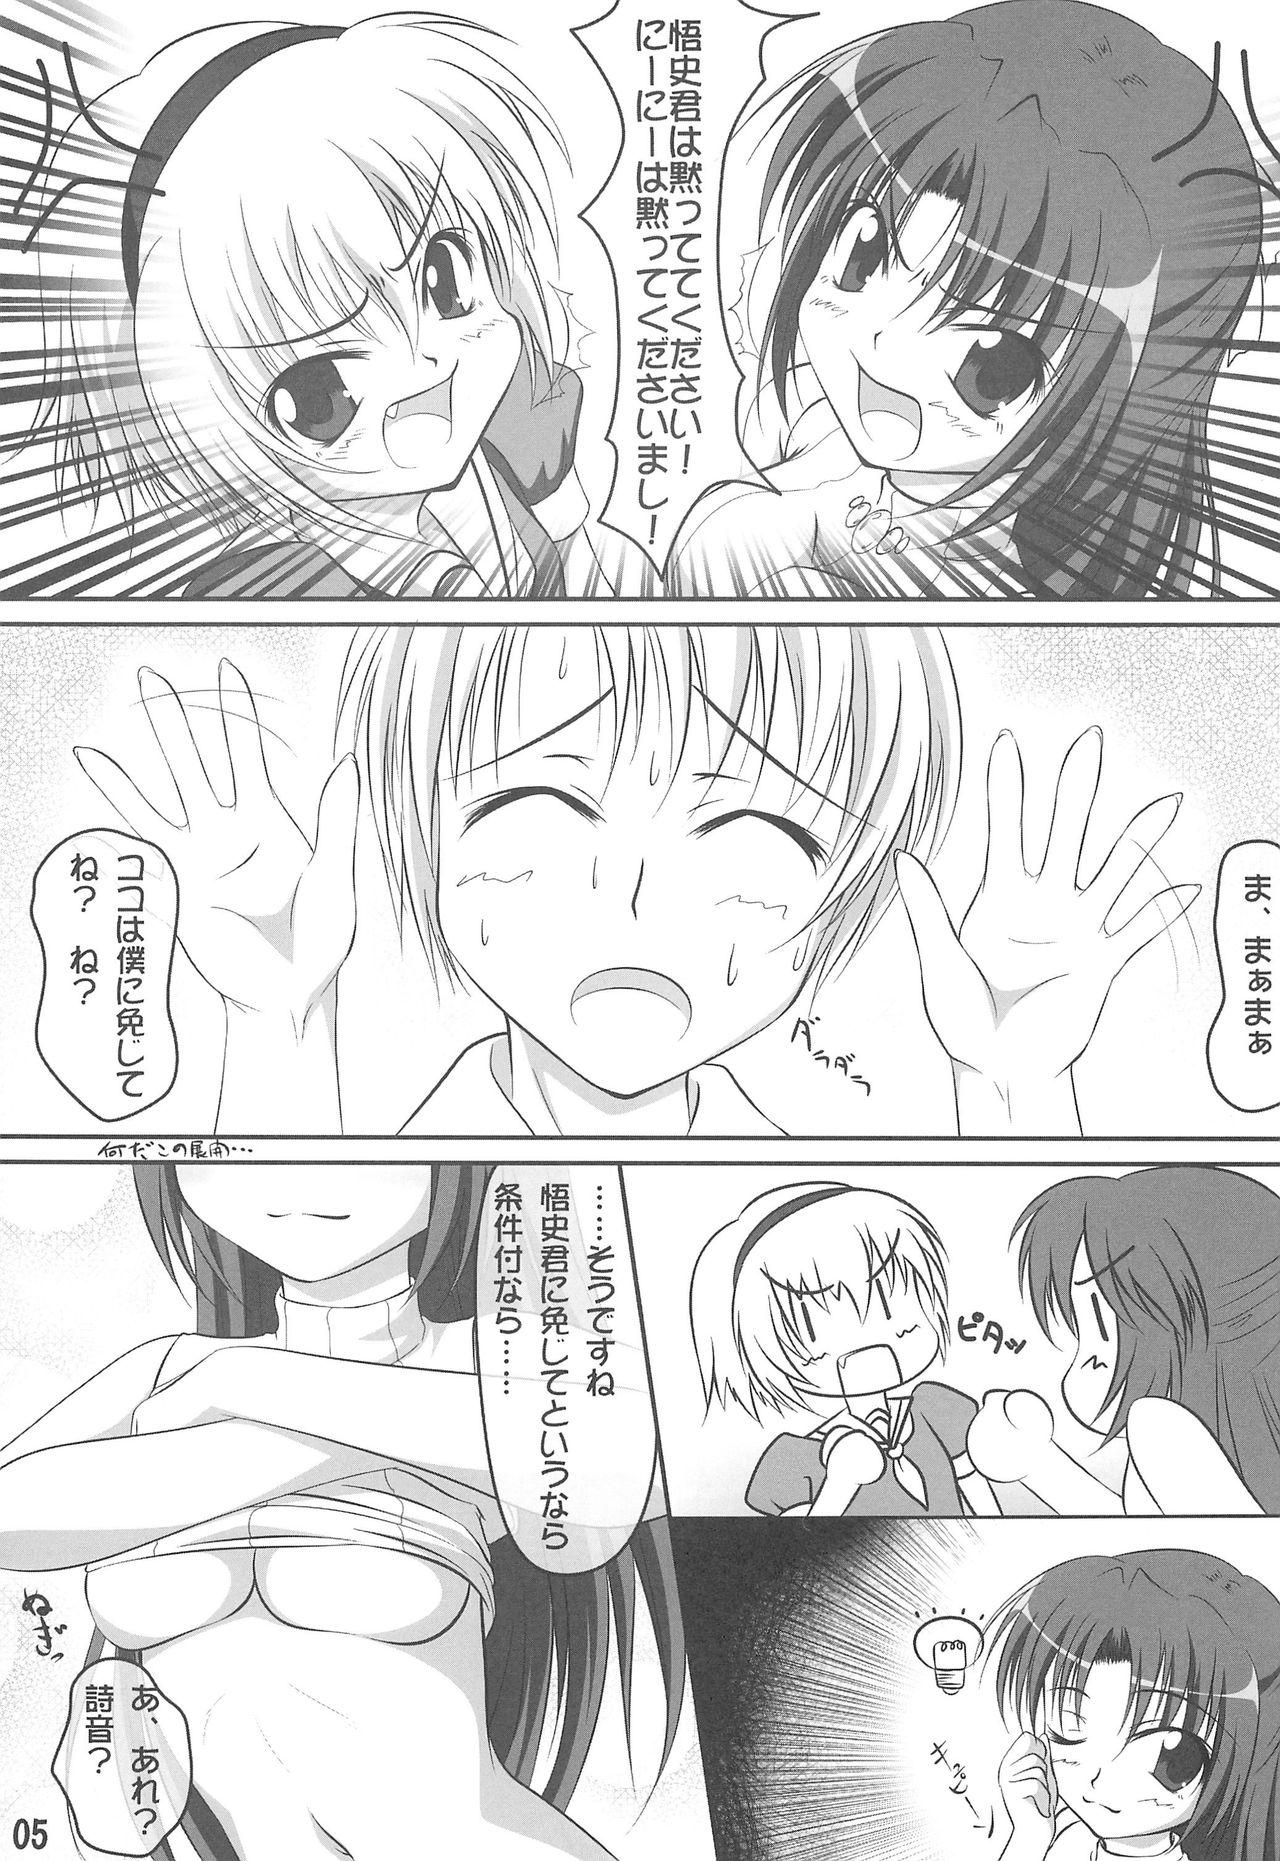 Camgirl Double Attack! - Higurashi no naku koro ni Butt Sex - Page 4